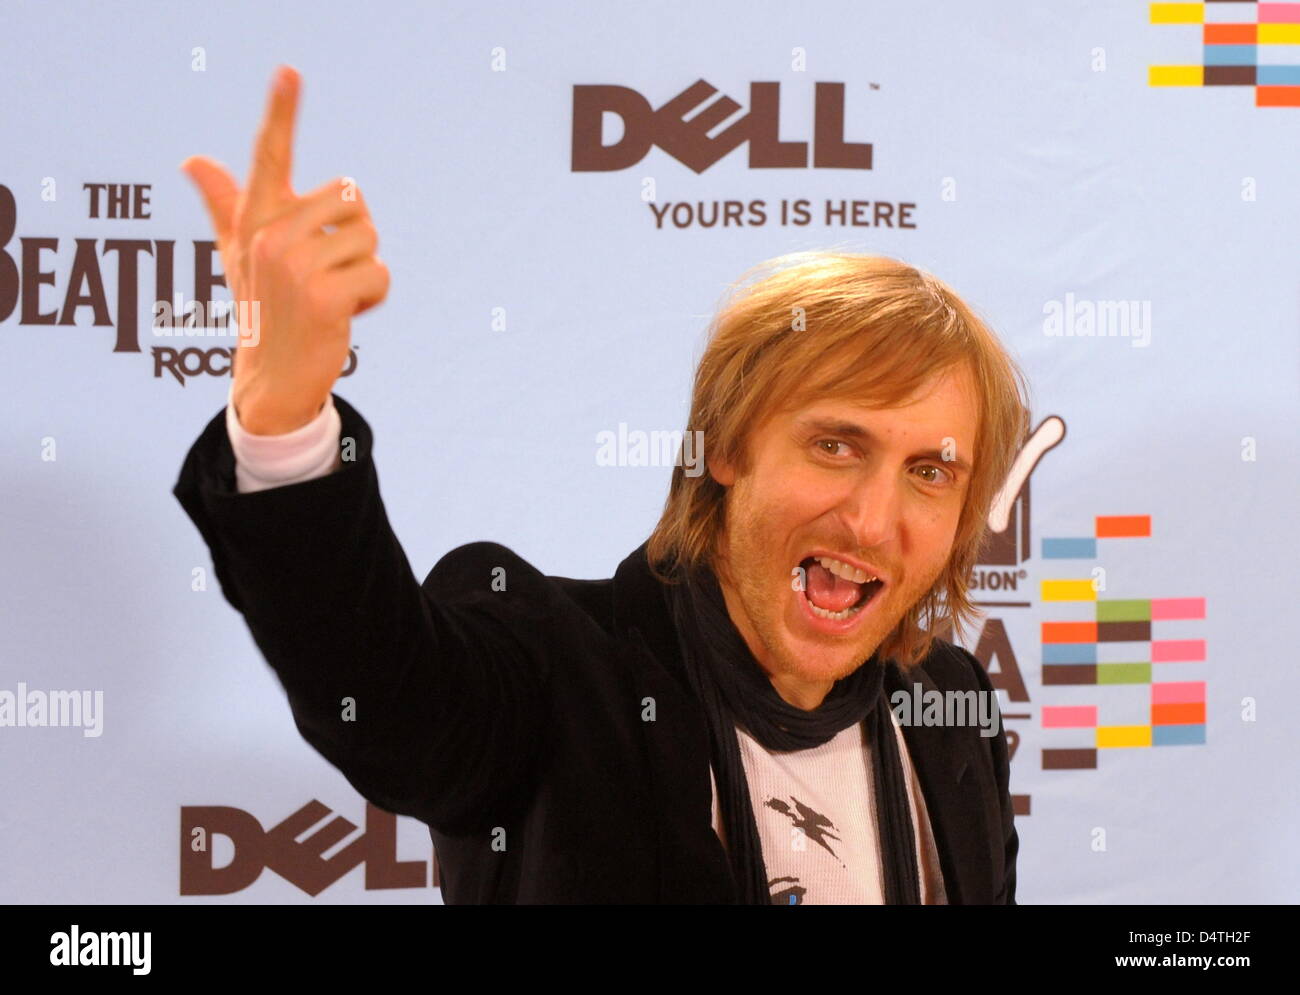 DJ français David Guetta pose lors d'un appel à la photo les MTV Europe Music Awards à O2 World à Berlin, Allemagne, 05 novembre 2009. MTV a choisi Berlin pour la cérémonie comme l'année 2009 marque le 20e anniversaire de la chute du Mur de Berlin. Photo : Soeren Stache Banque D'Images